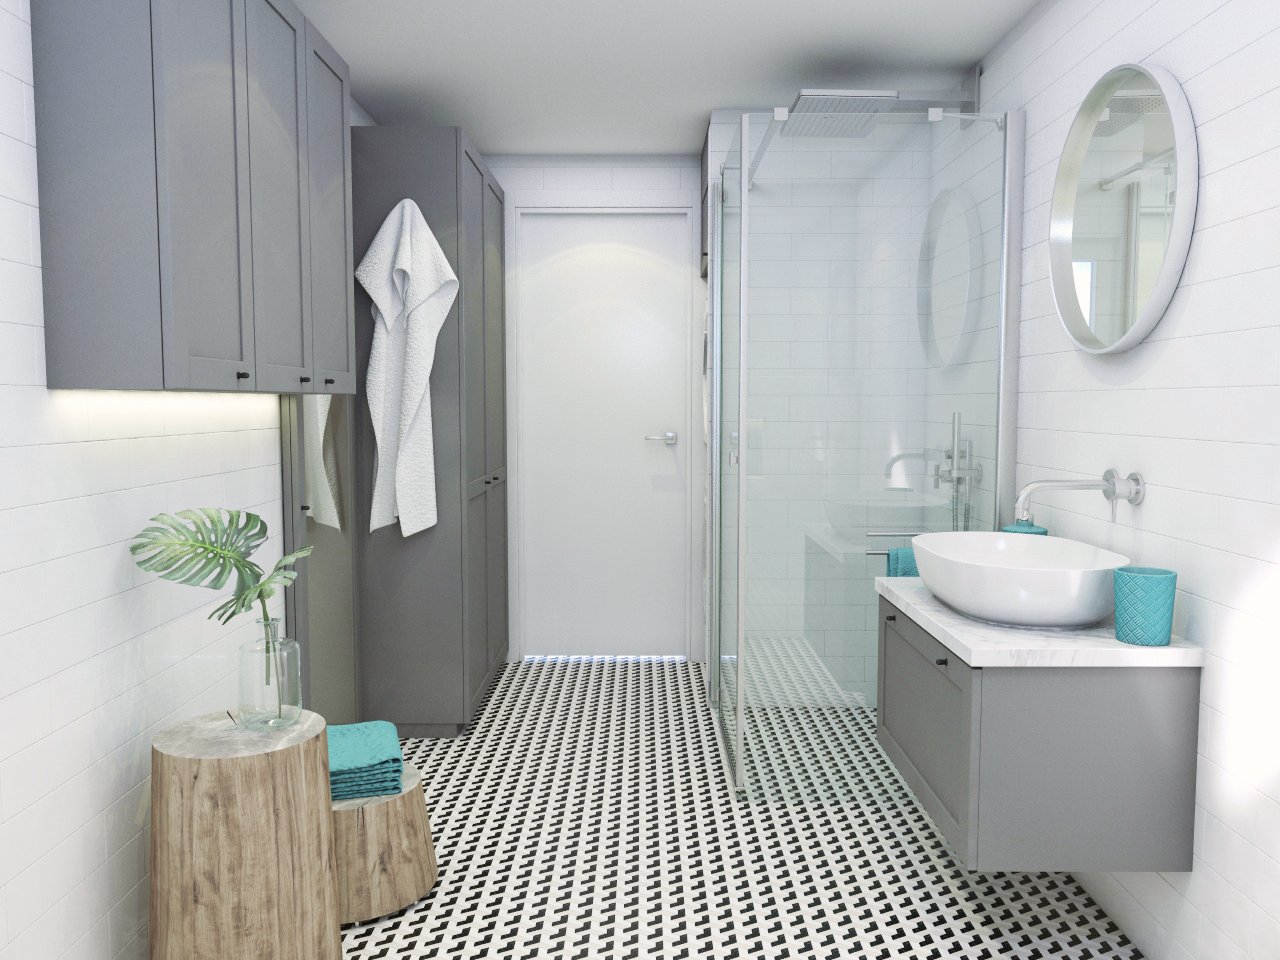 Kúpeľňa so sprchovým kútom a umývadlom so skrinkou, so šedými odkladacími priestormi a dekoratívnymi drevenými stolíkmi